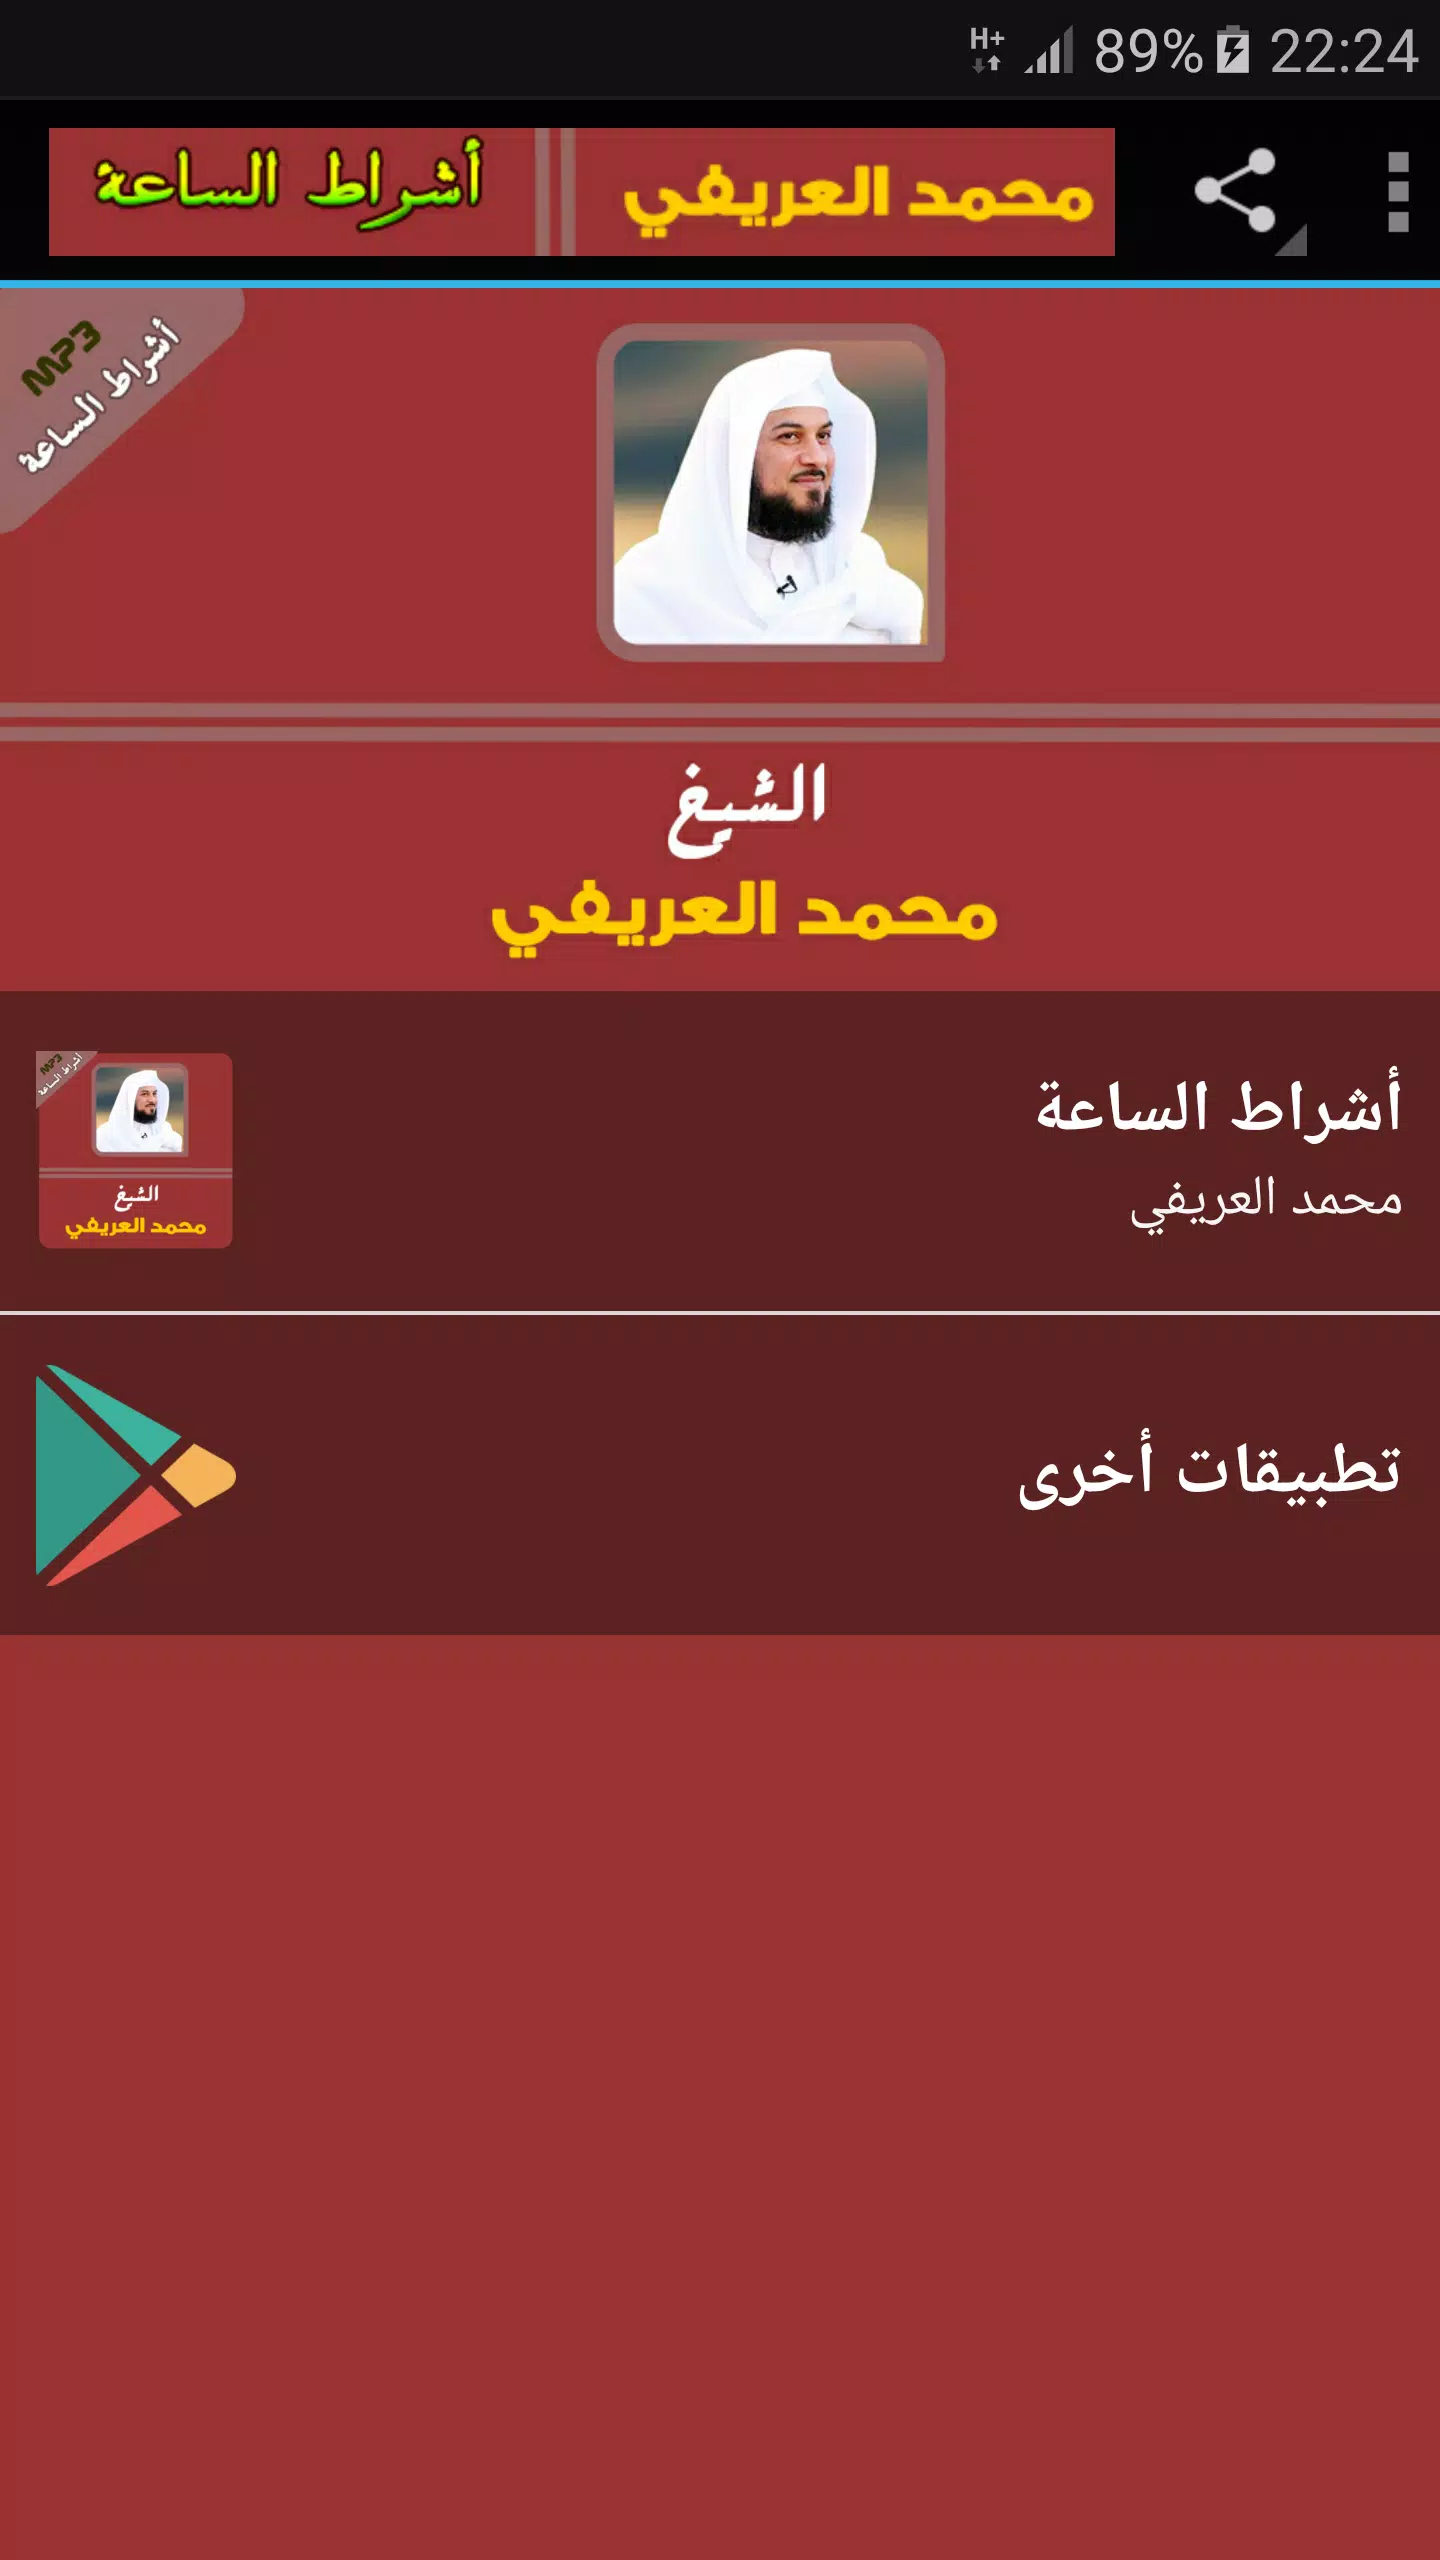 علامات الساعة الصغرى والكبرى محمد العريفي APK für Android herunterladen